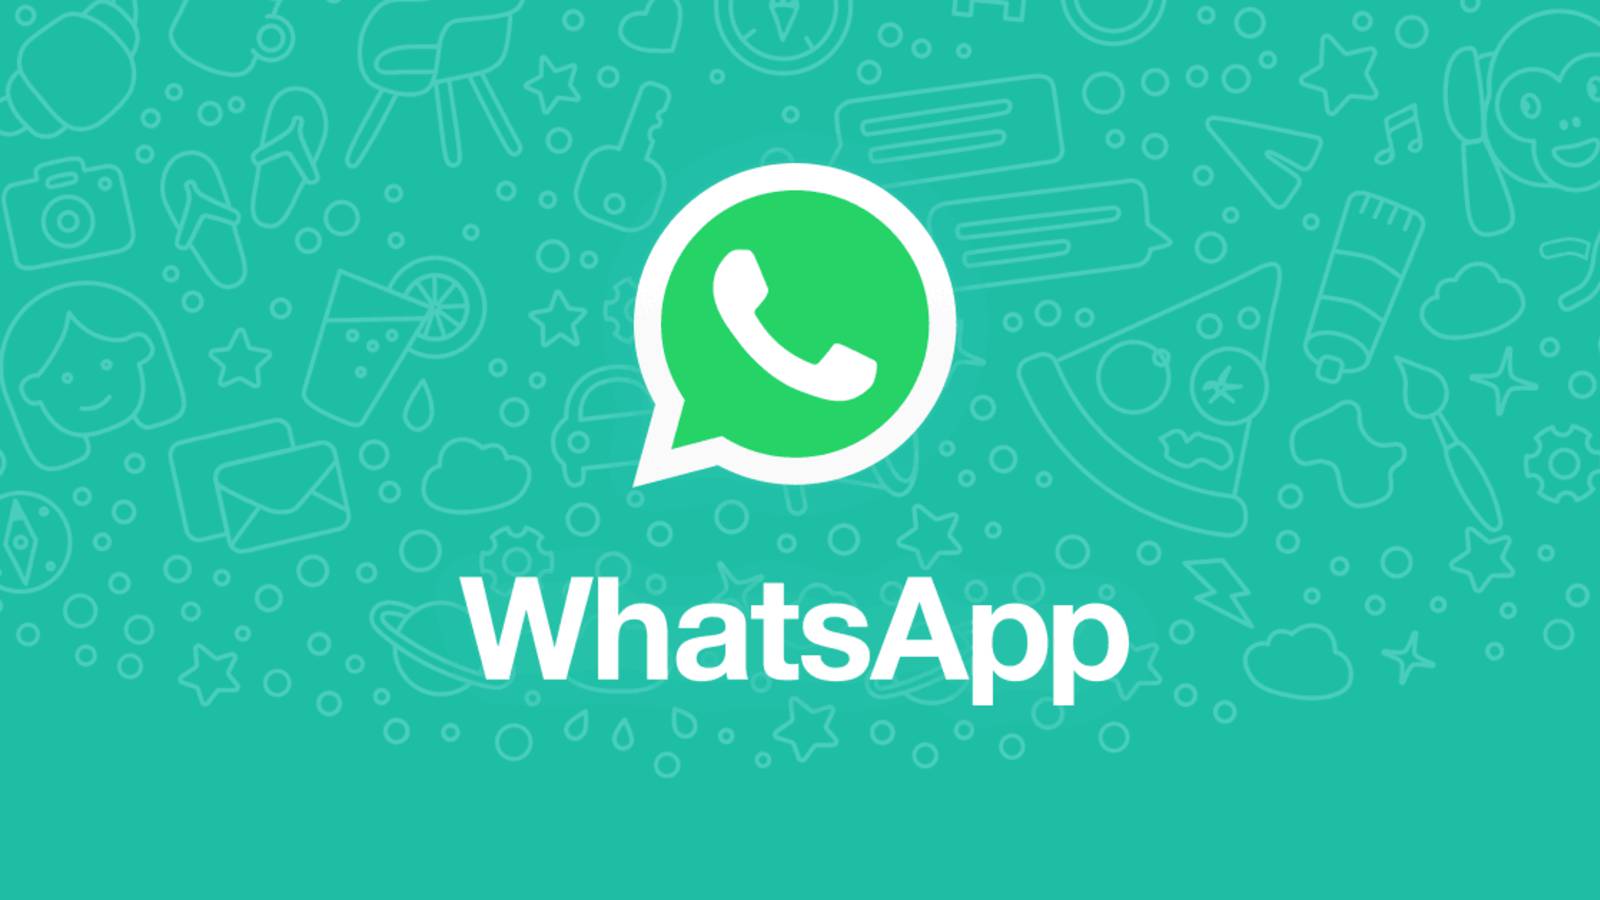 Modo oscuro beta de WhatsApp